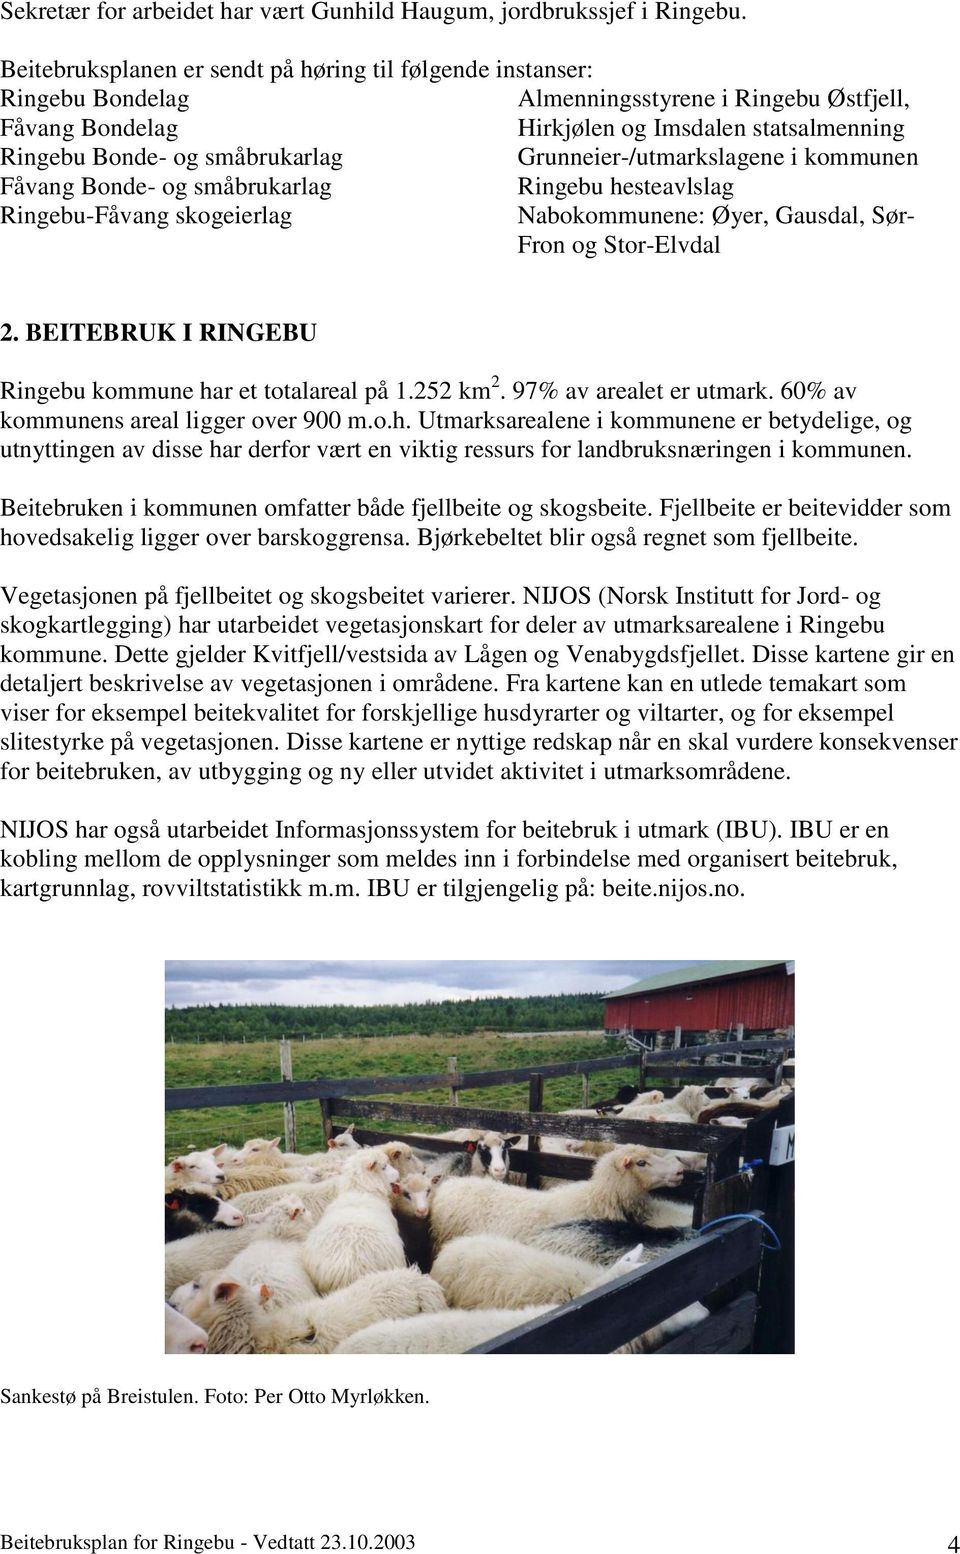 Grunneier-/utmarkslagene i kommunen Fåvang Bonde- og småbrukarlag Ringebu hesteavlslag Ringebu-Fåvang skogeierlag Nabokommunene: Øyer, Gausdal, Sør- Fron og Stor-Elvdal 2.